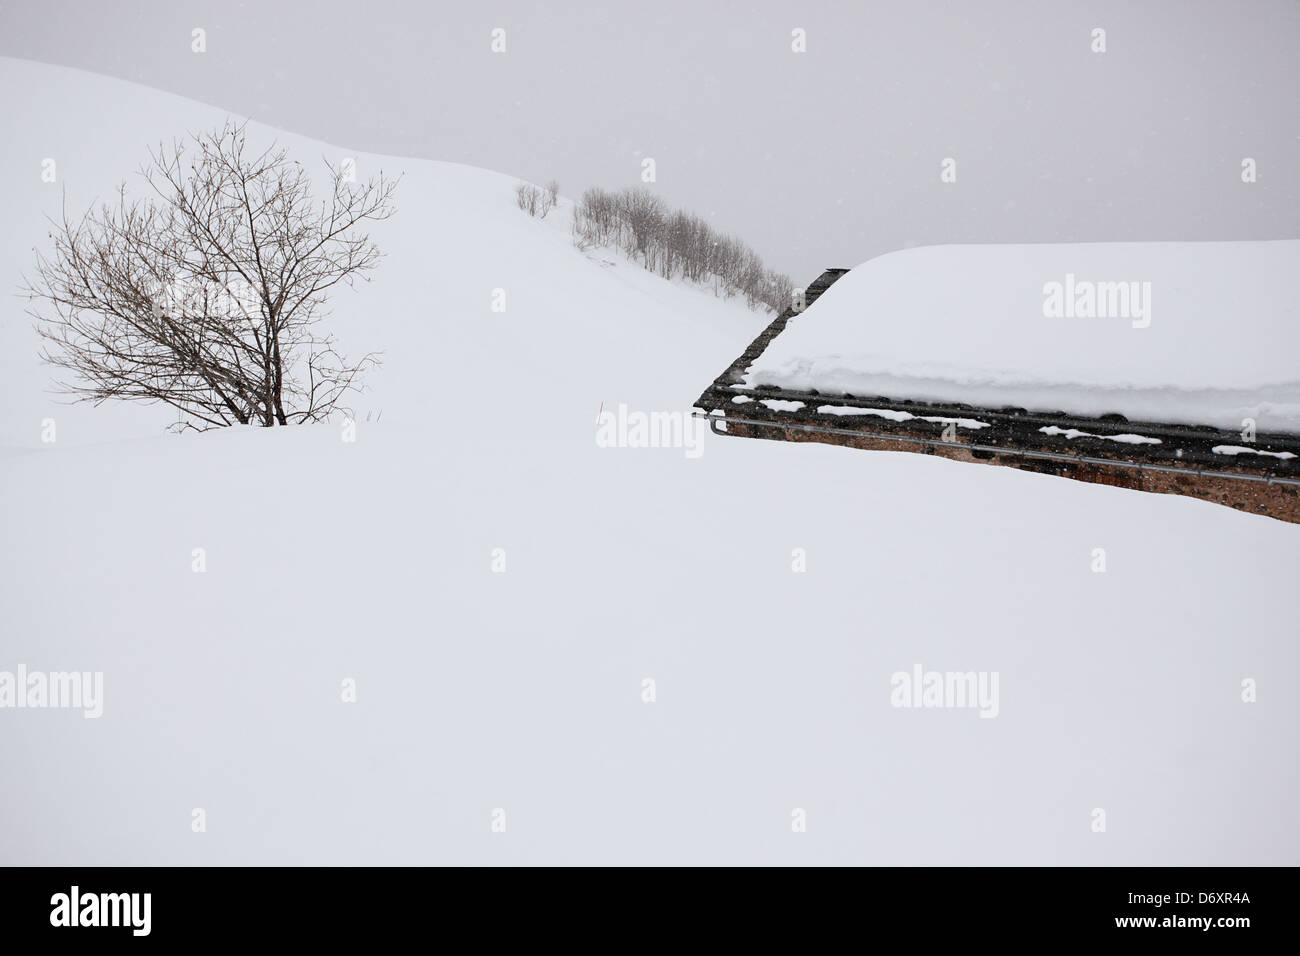 Skiing in Meribel, France Stock Photo